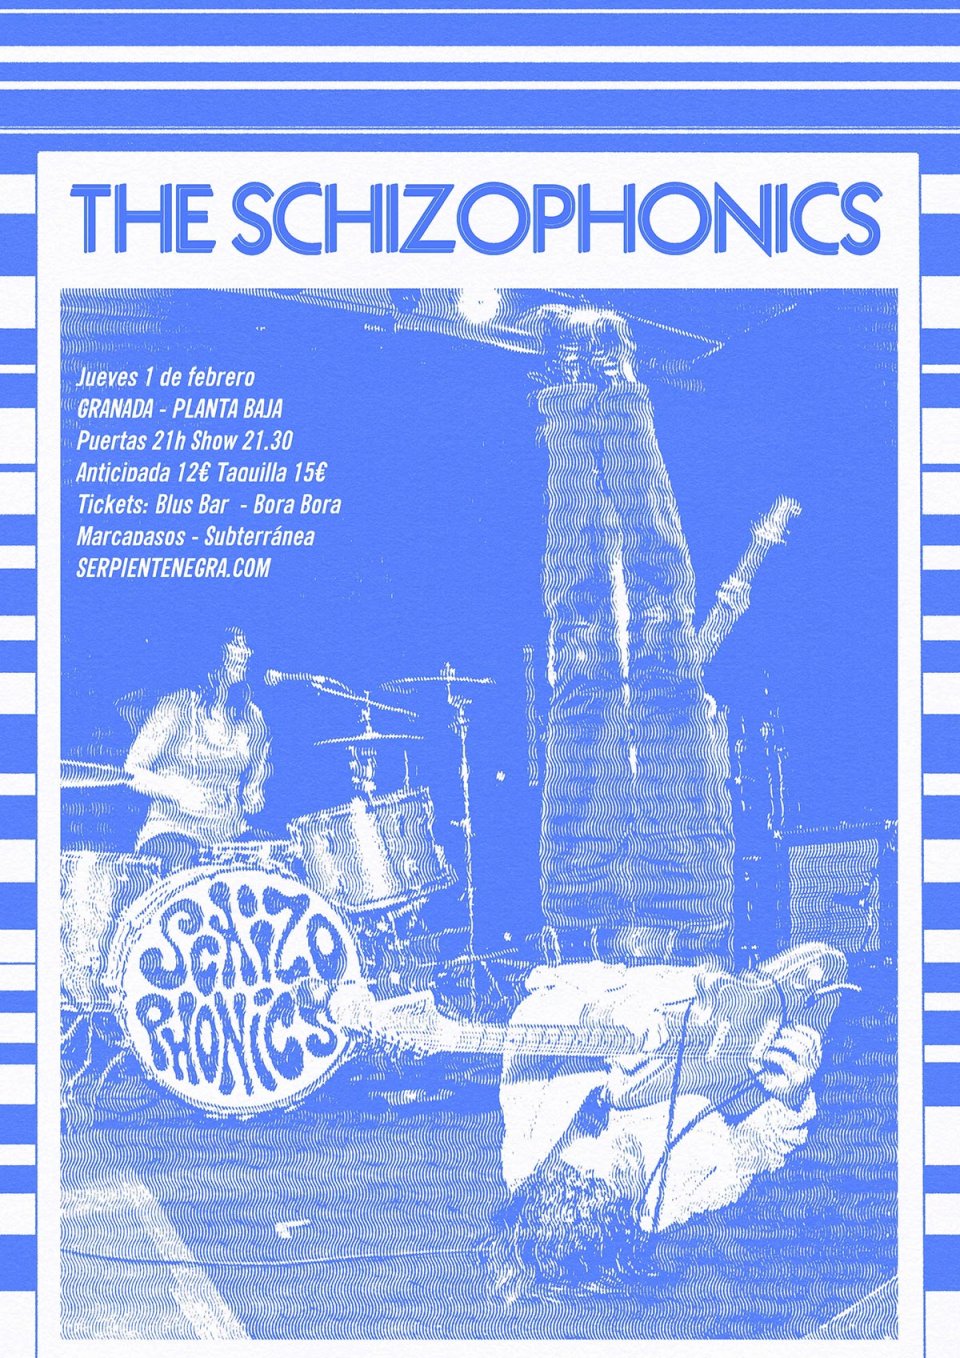 The Schizophonics